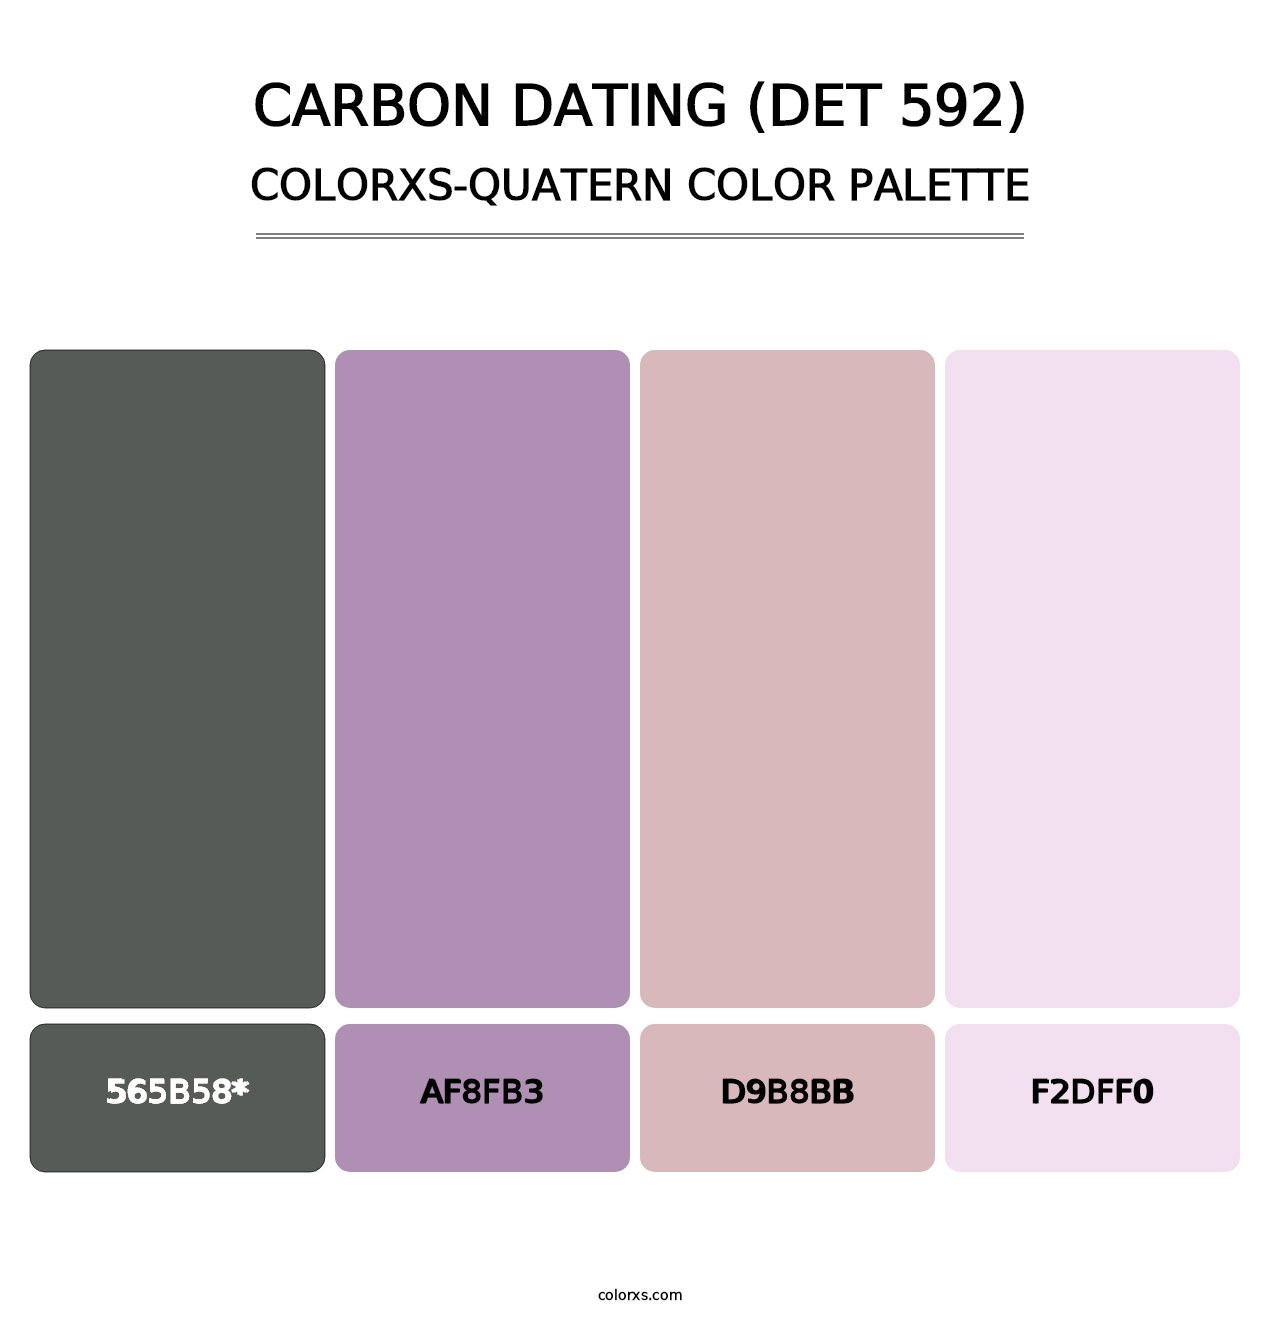 Carbon Dating (DET 592) - Colorxs Quatern Palette